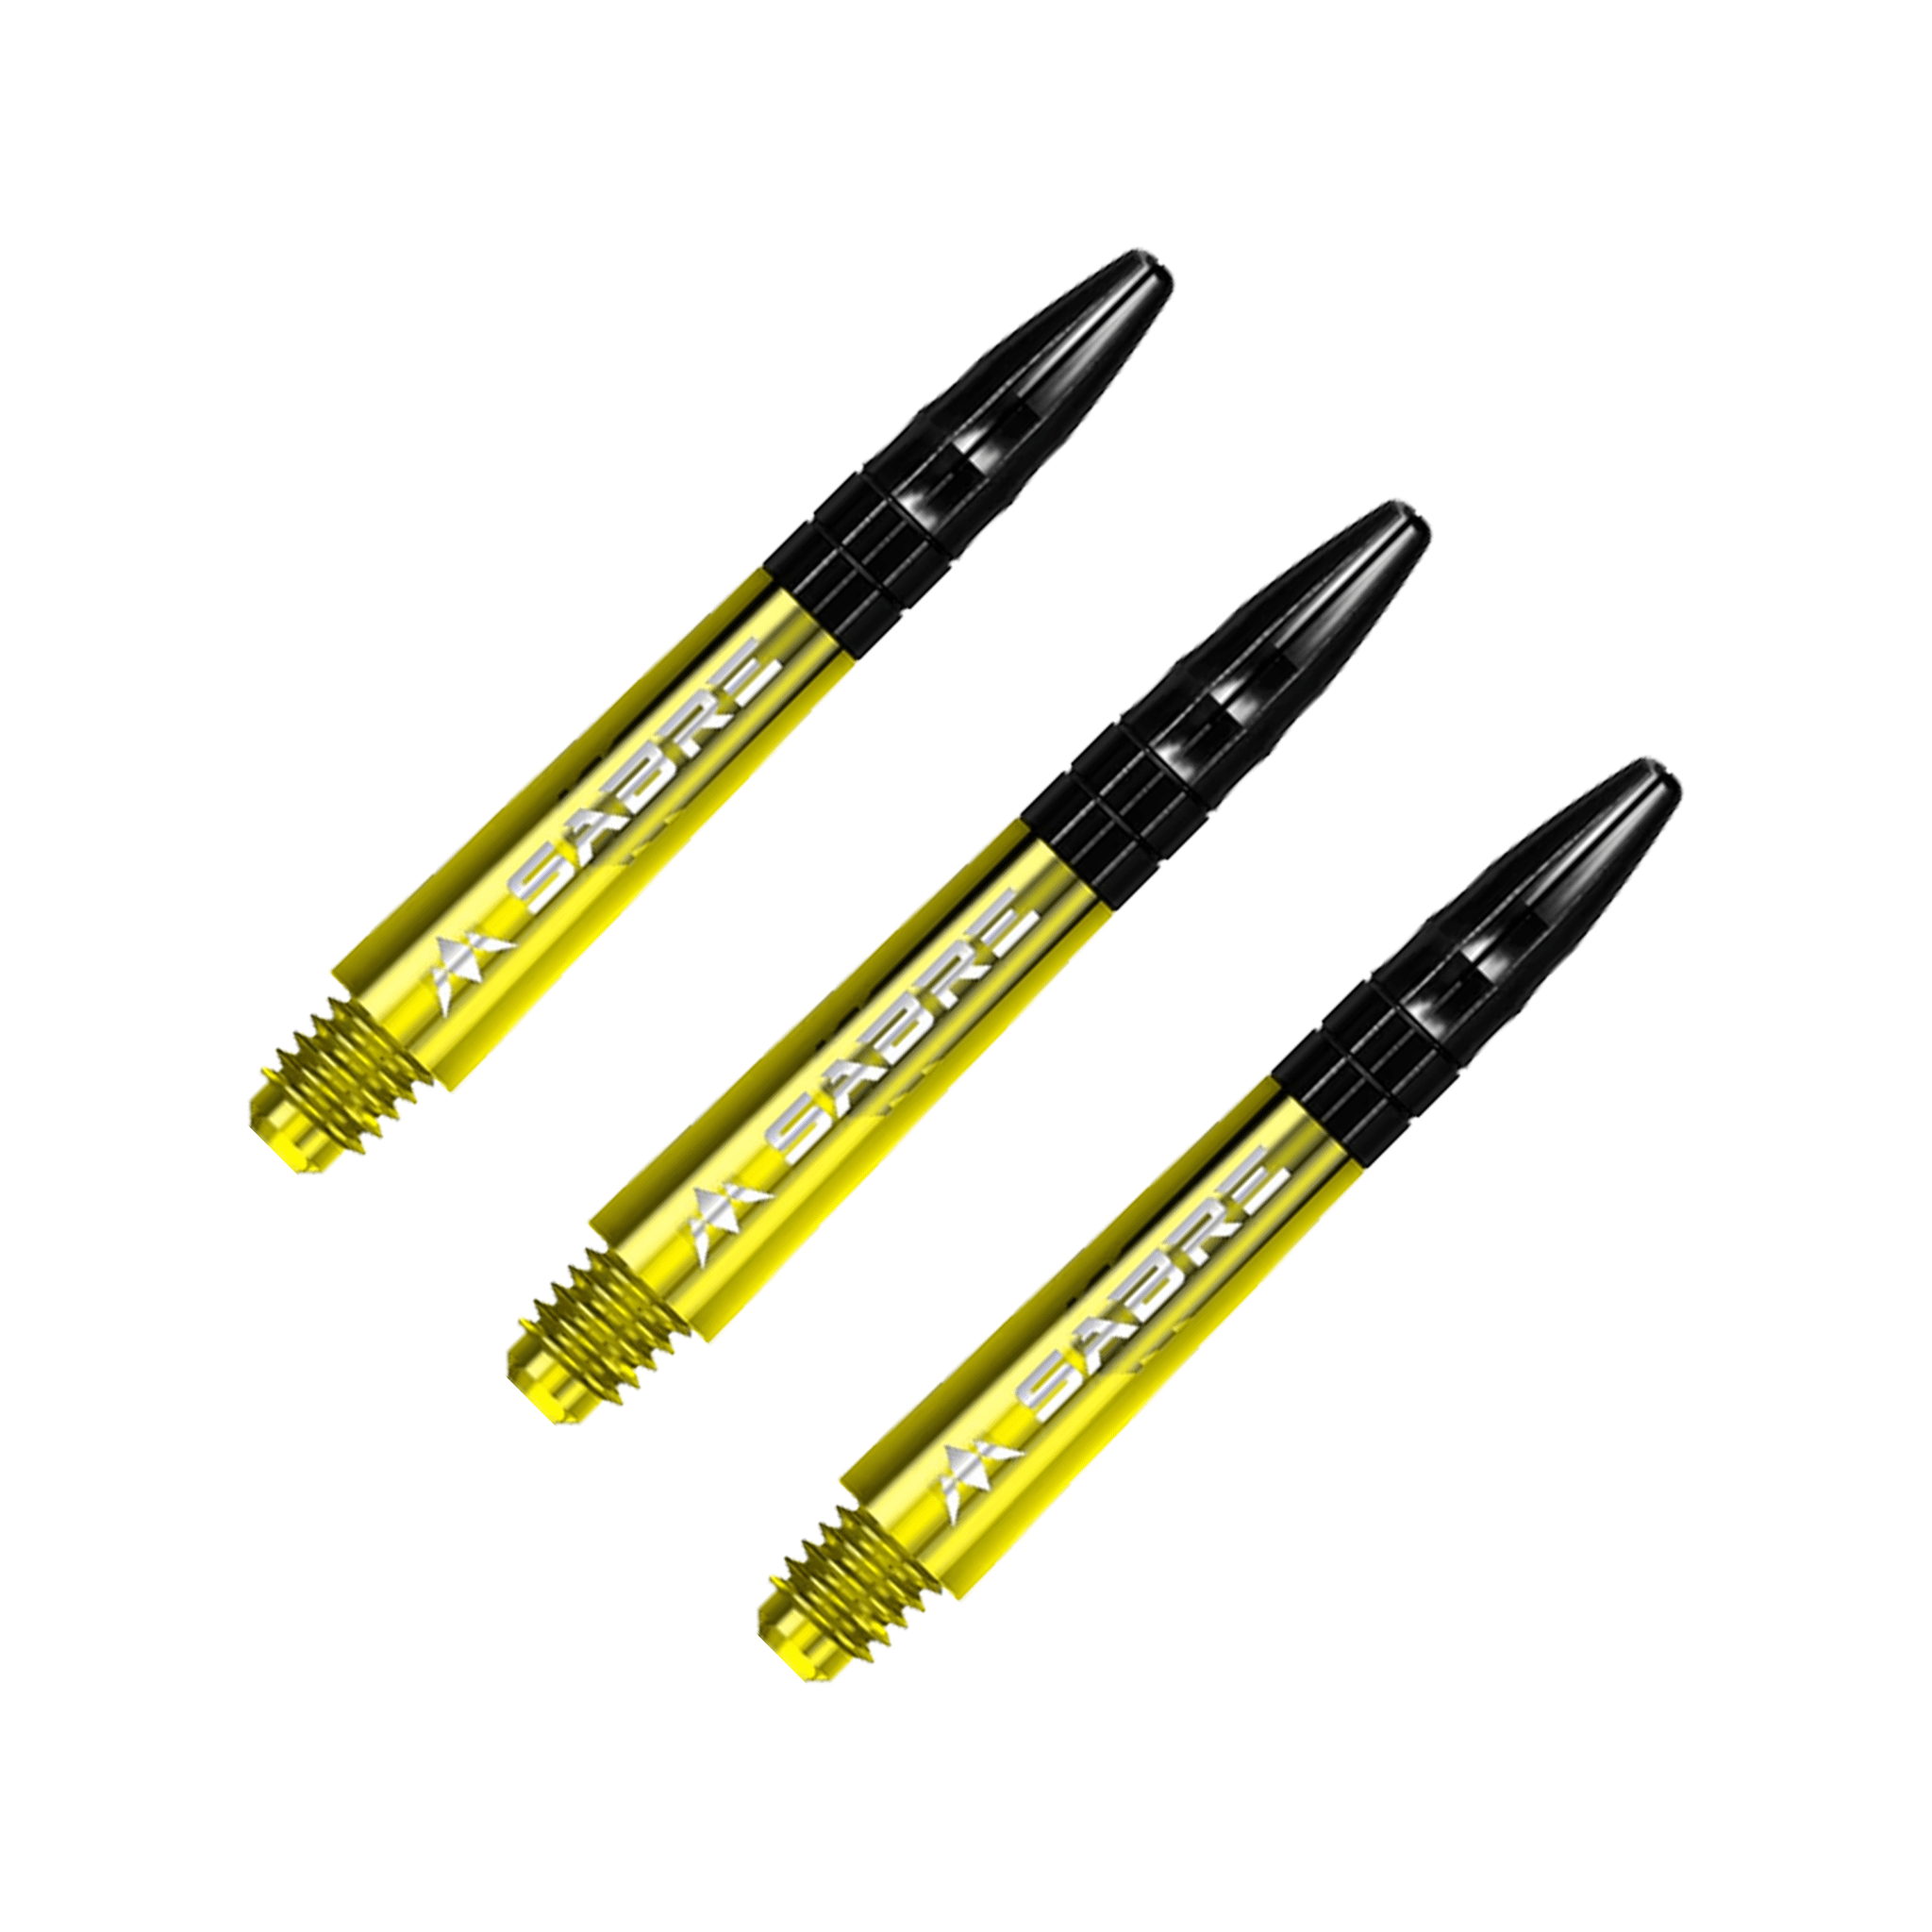 Mission Sabre - Polycarbonate Dart Shafts Short (36mm) / Yellow & Black Shafts